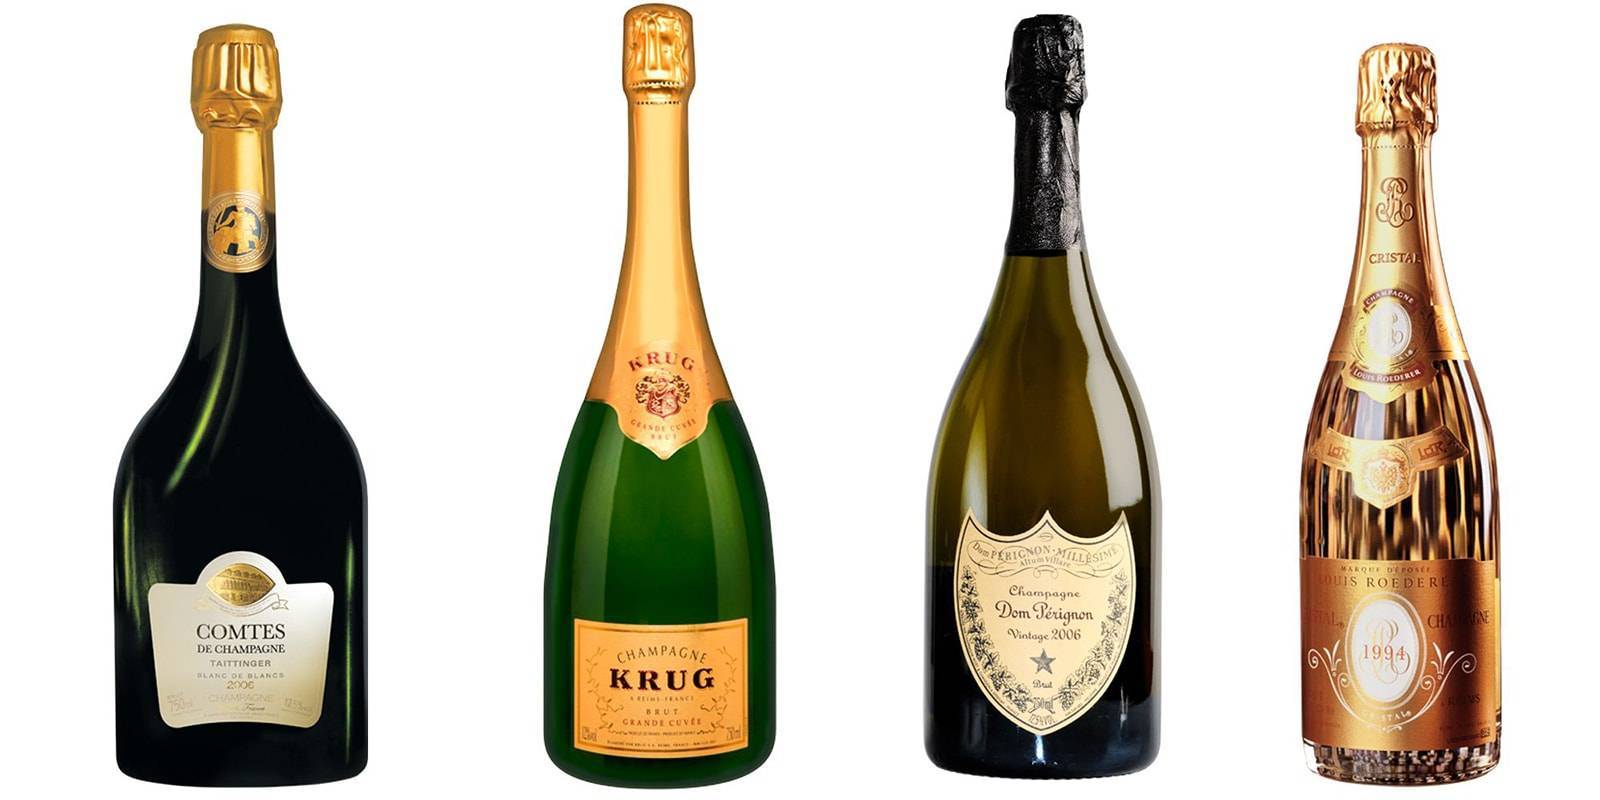 11 самых дорогих бутылок шампанского в мире - список с ценой